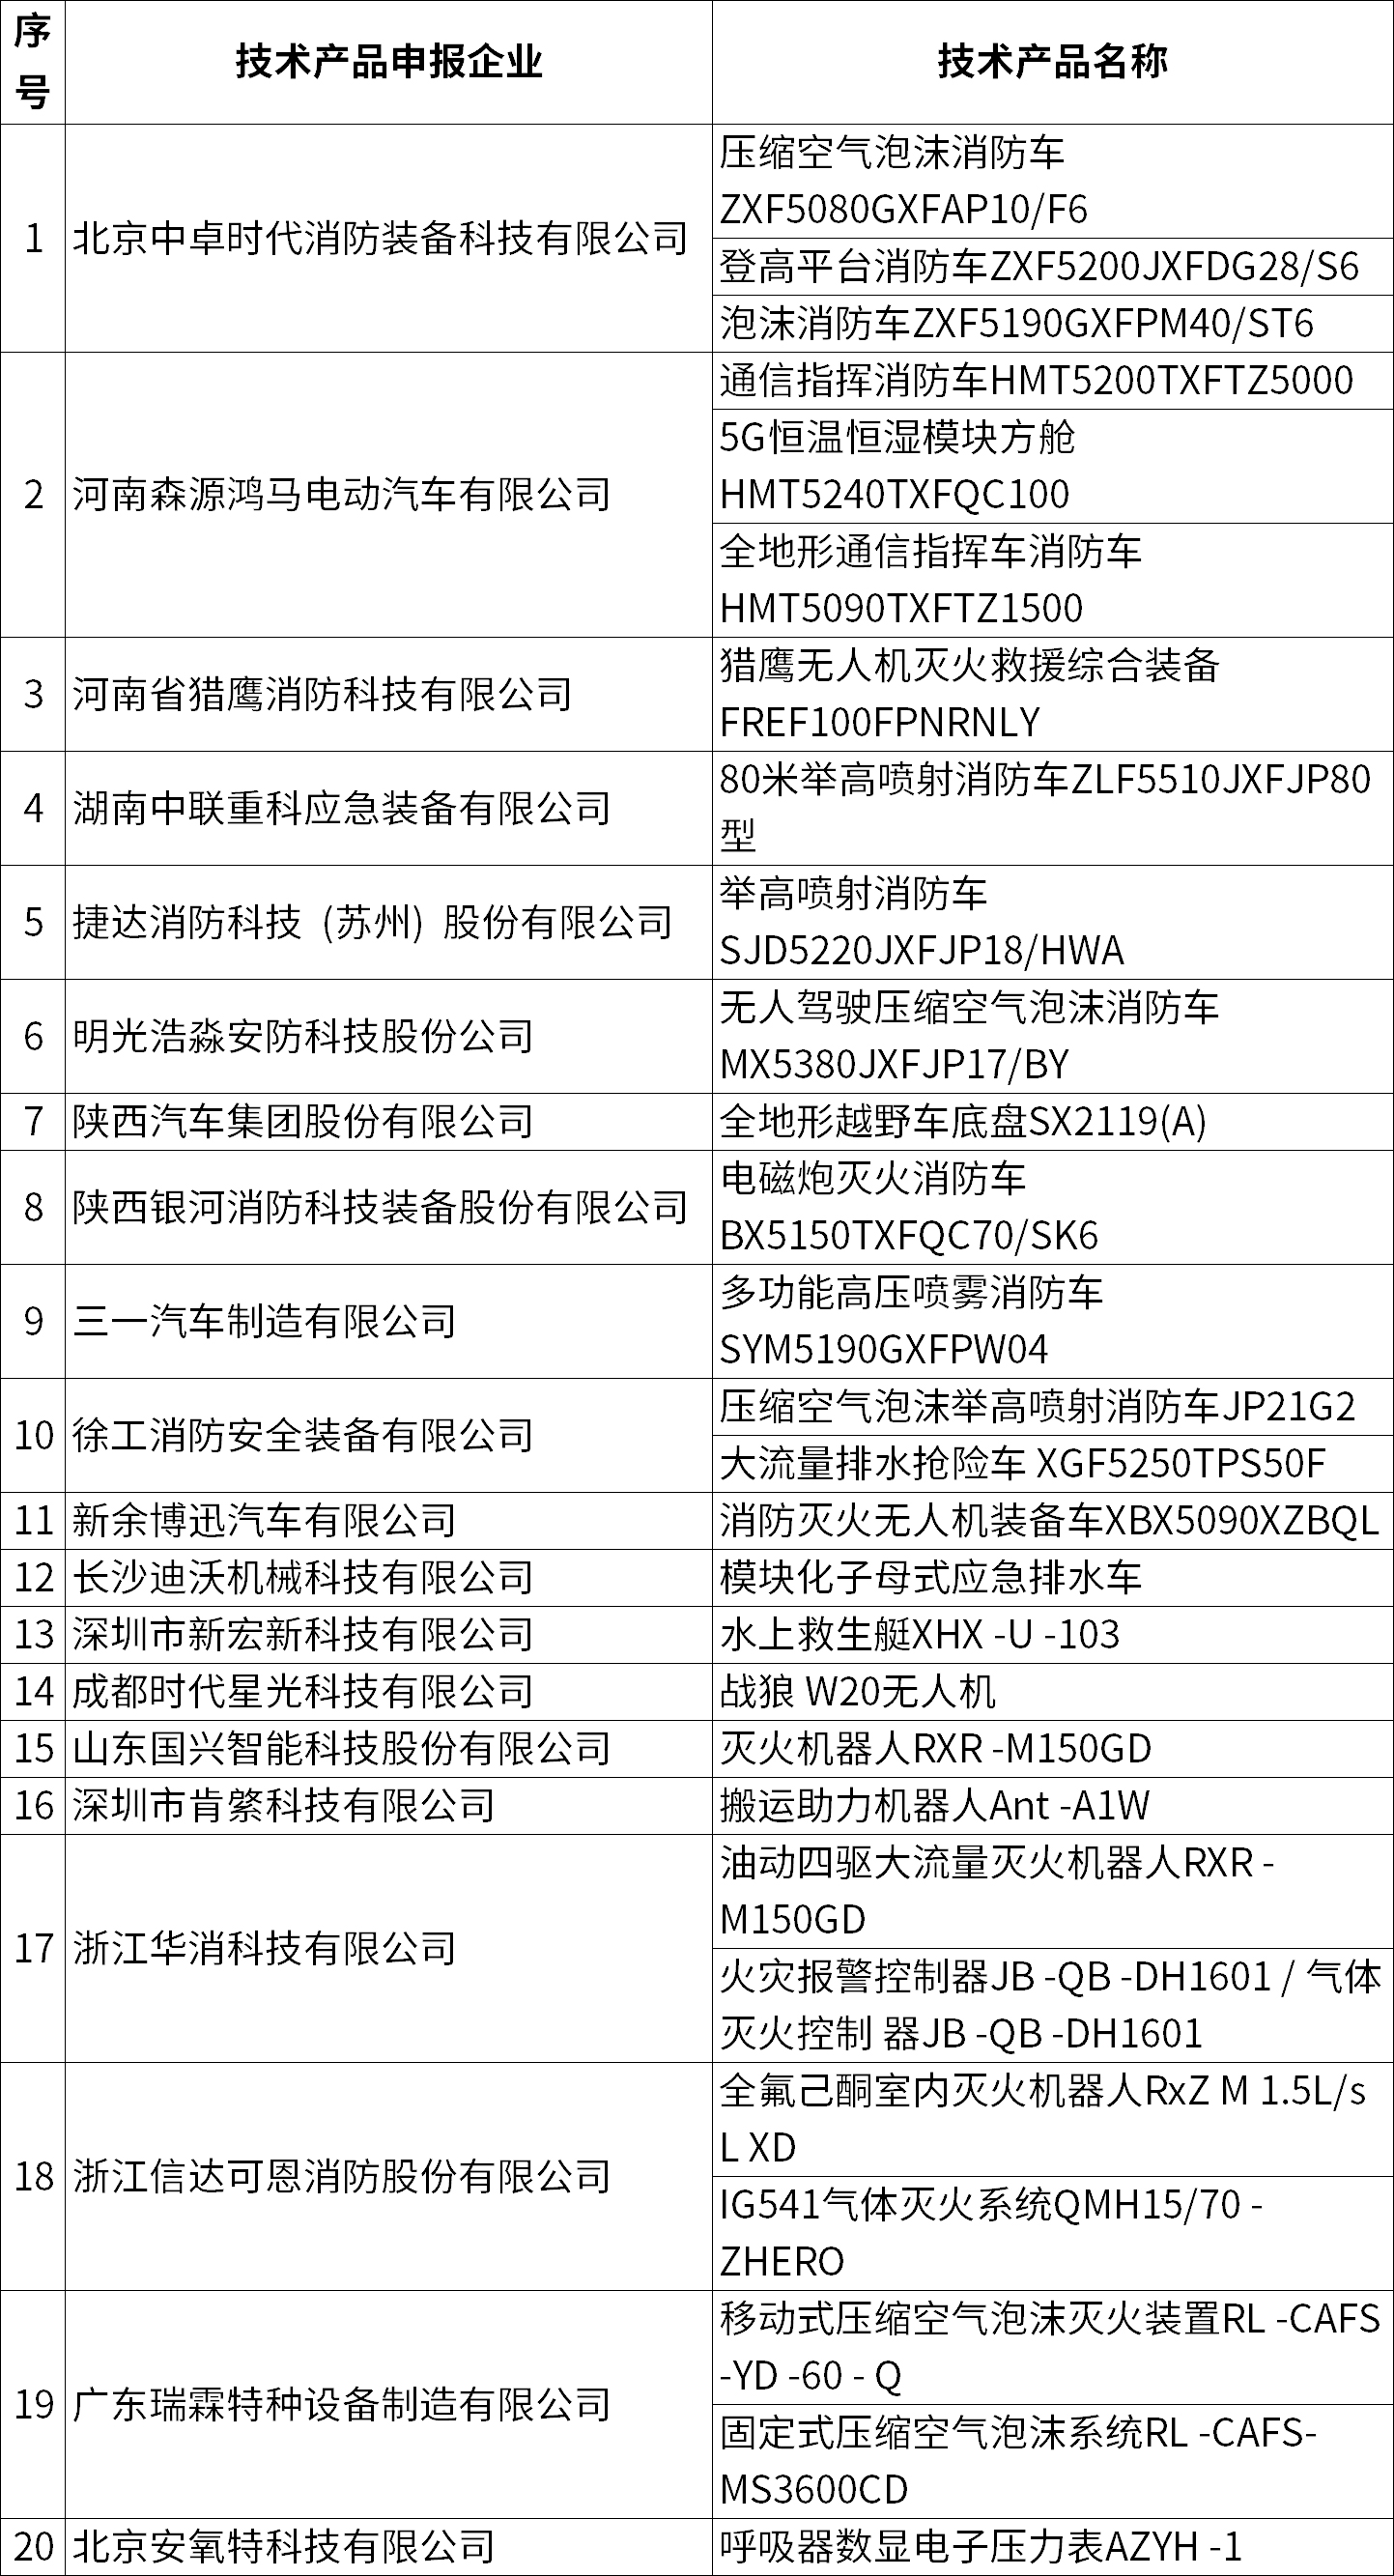 58项研发成果获第二十届中国国际消防展创新产品证书